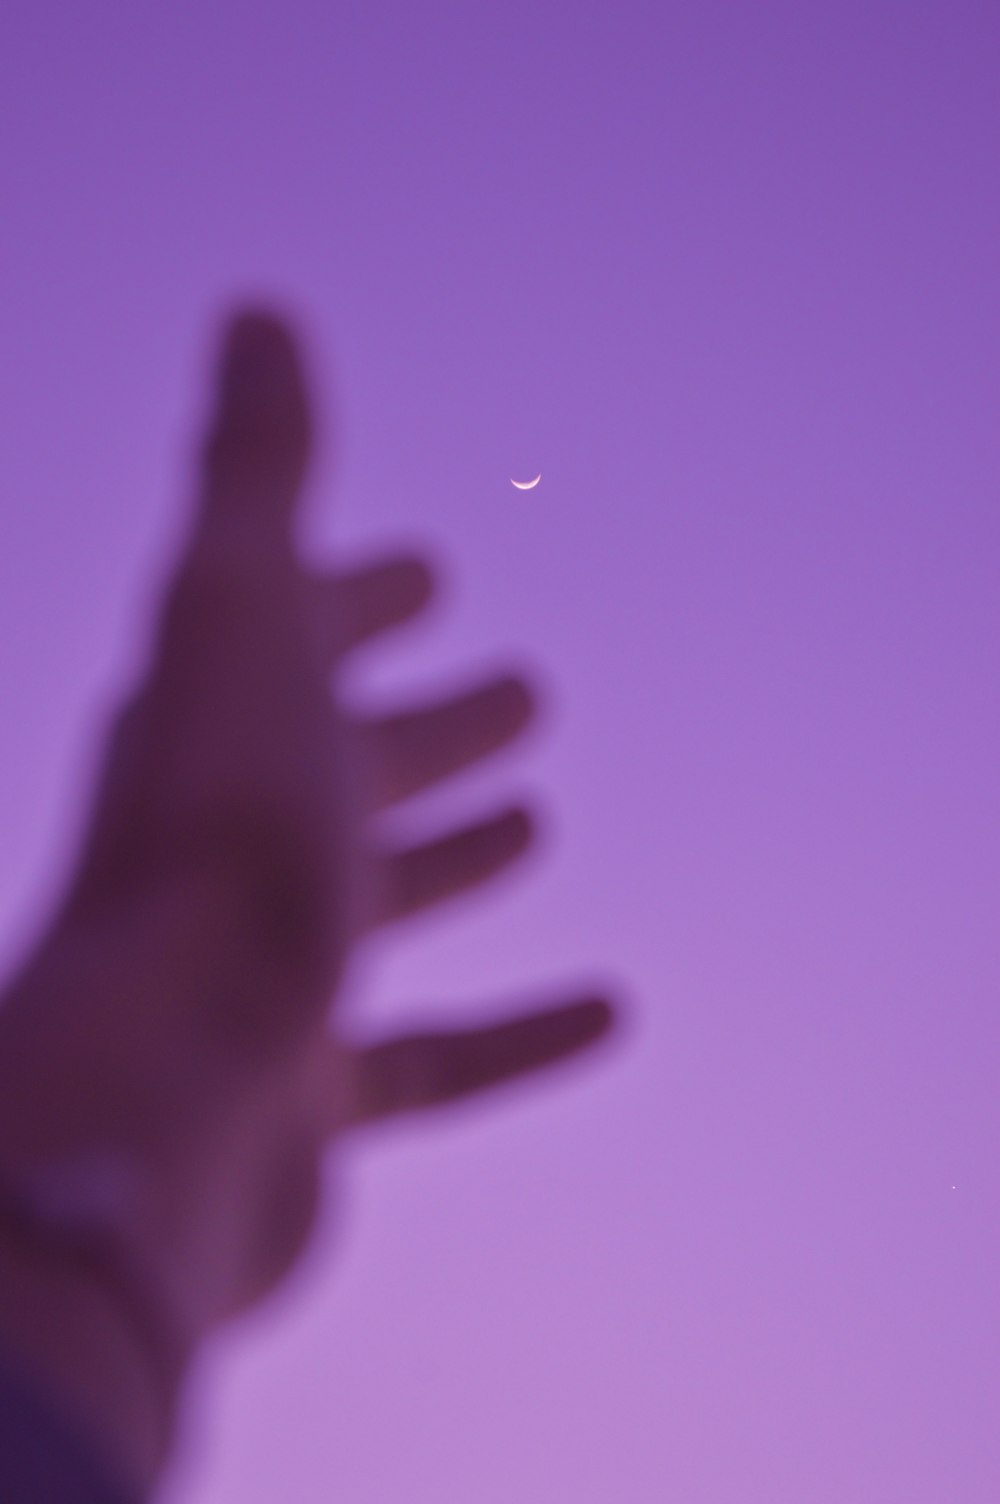 une photo floue de la main d’une personne avec une demi-lune dans le